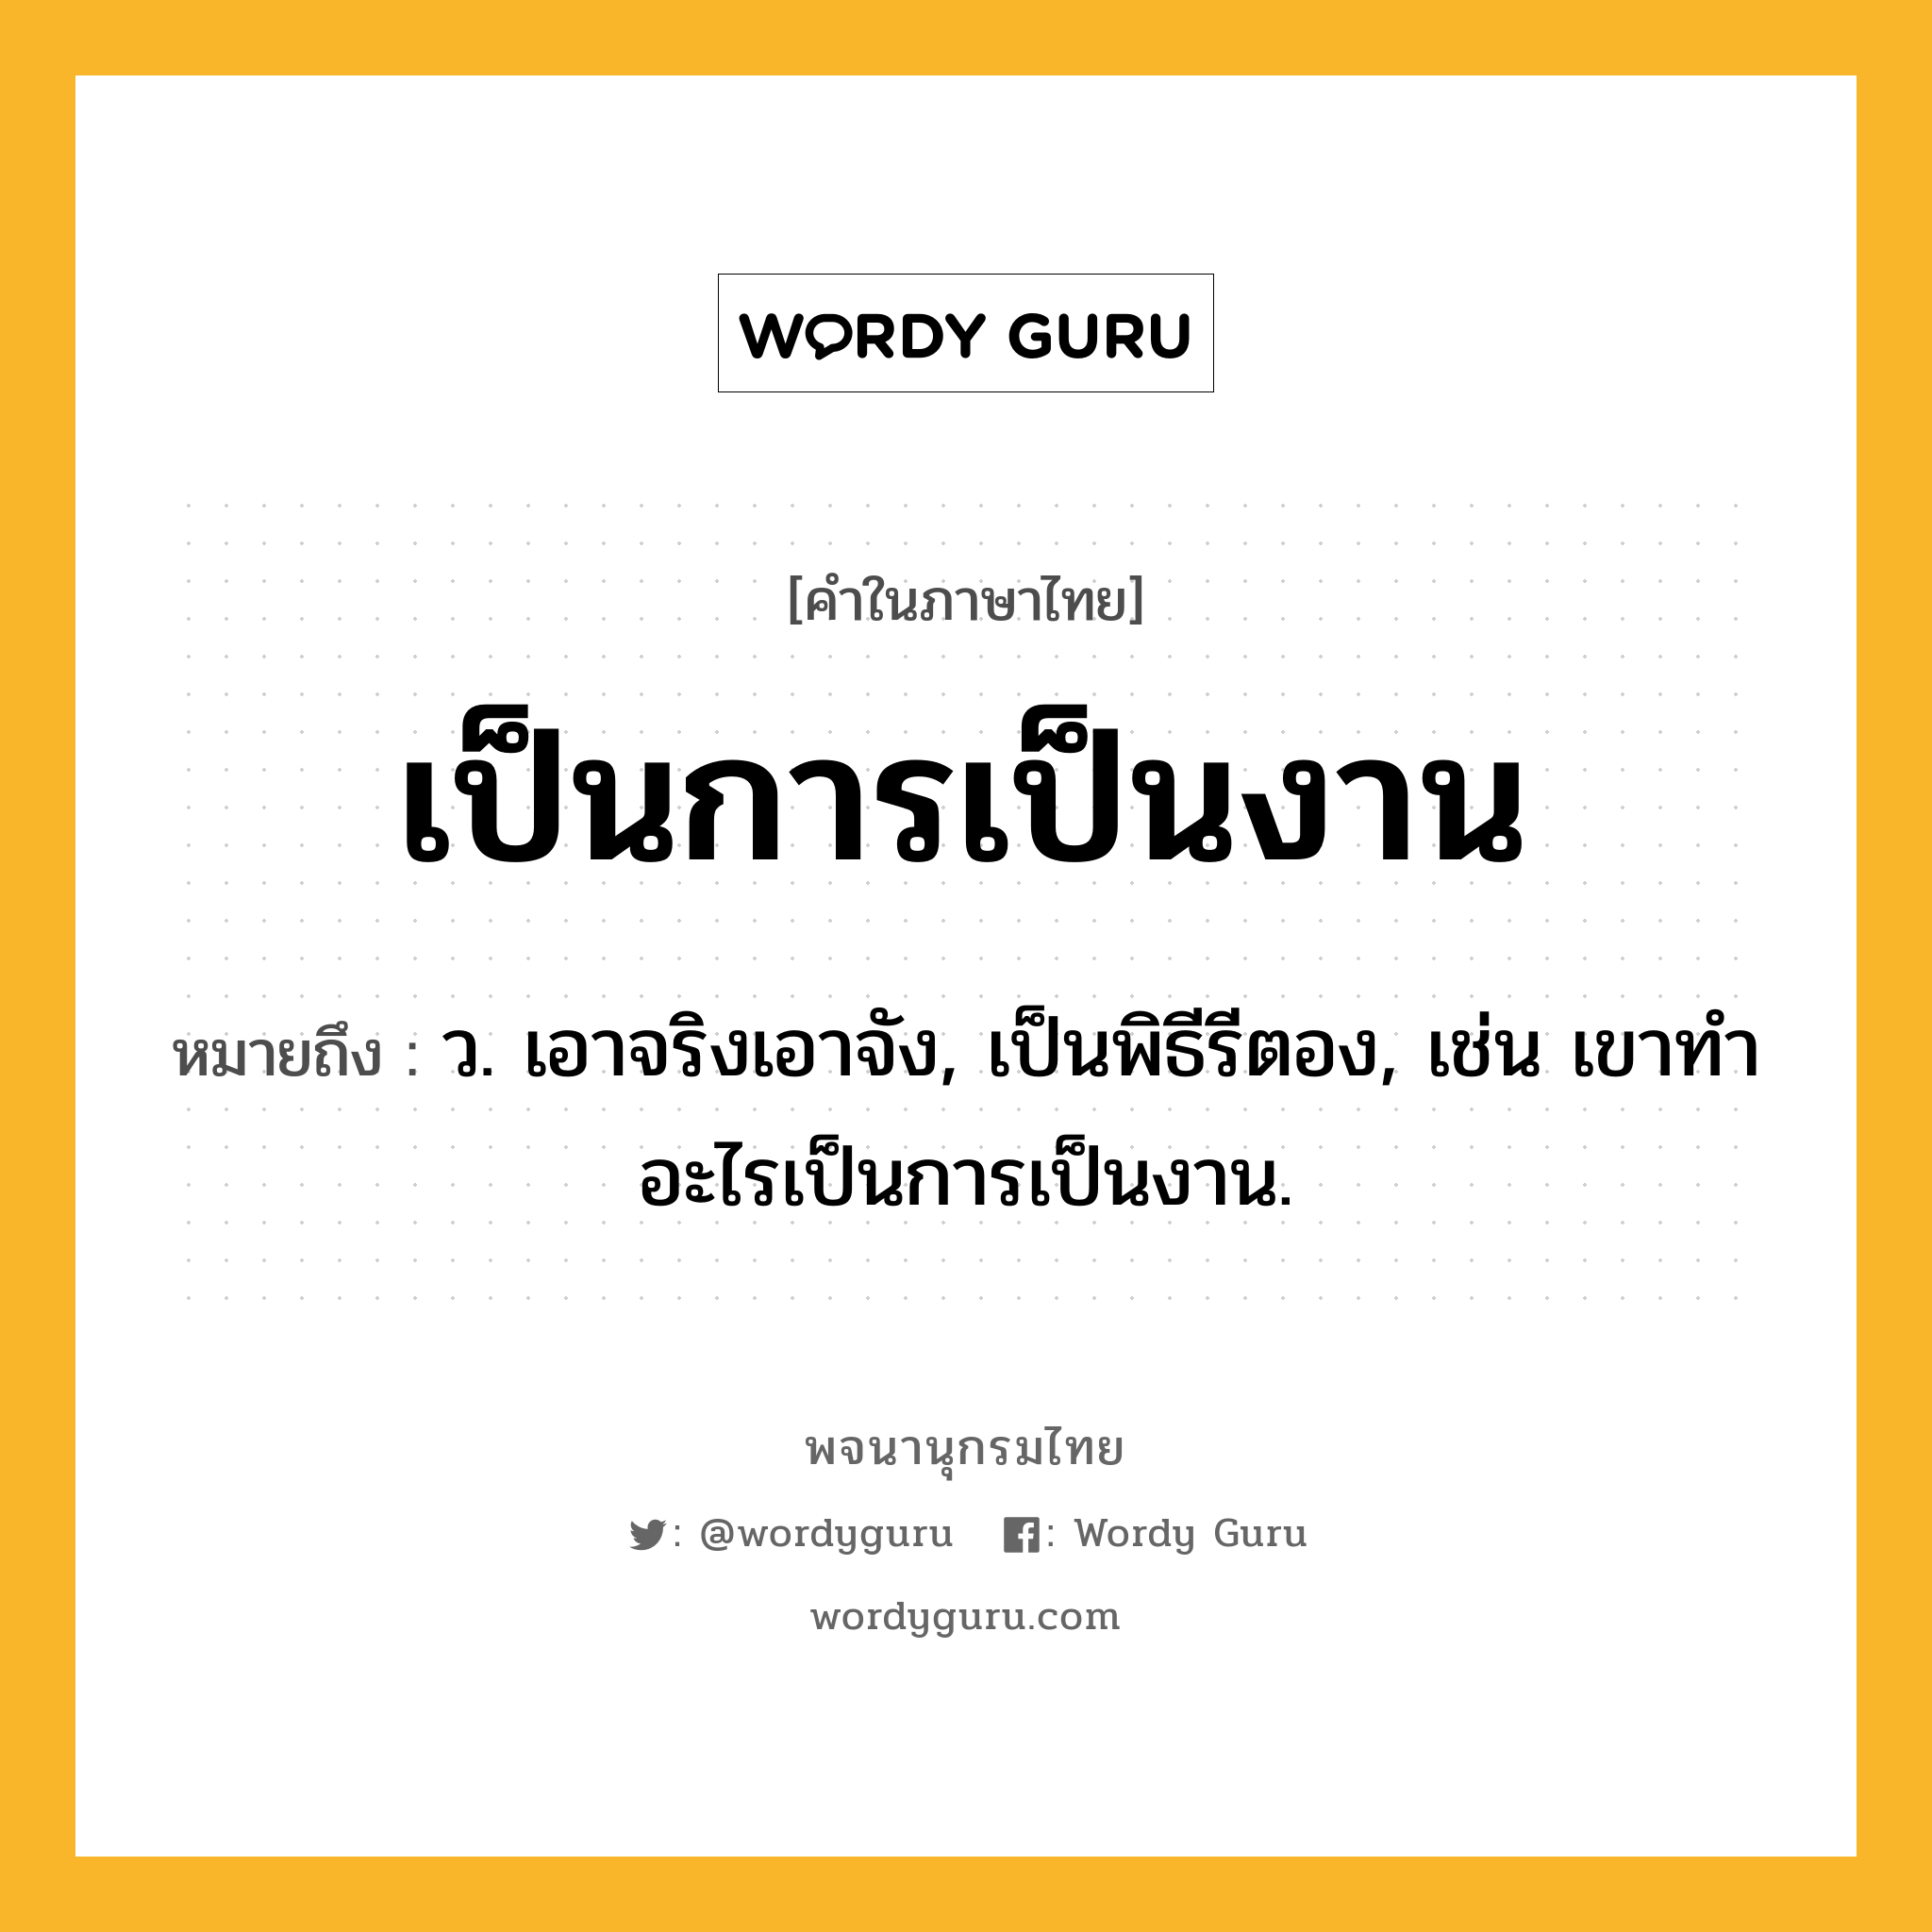 เป็นการเป็นงาน ความหมาย หมายถึงอะไร?, คำในภาษาไทย เป็นการเป็นงาน หมายถึง ว. เอาจริงเอาจัง, เป็นพิธีรีตอง, เช่น เขาทำอะไรเป็นการเป็นงาน.